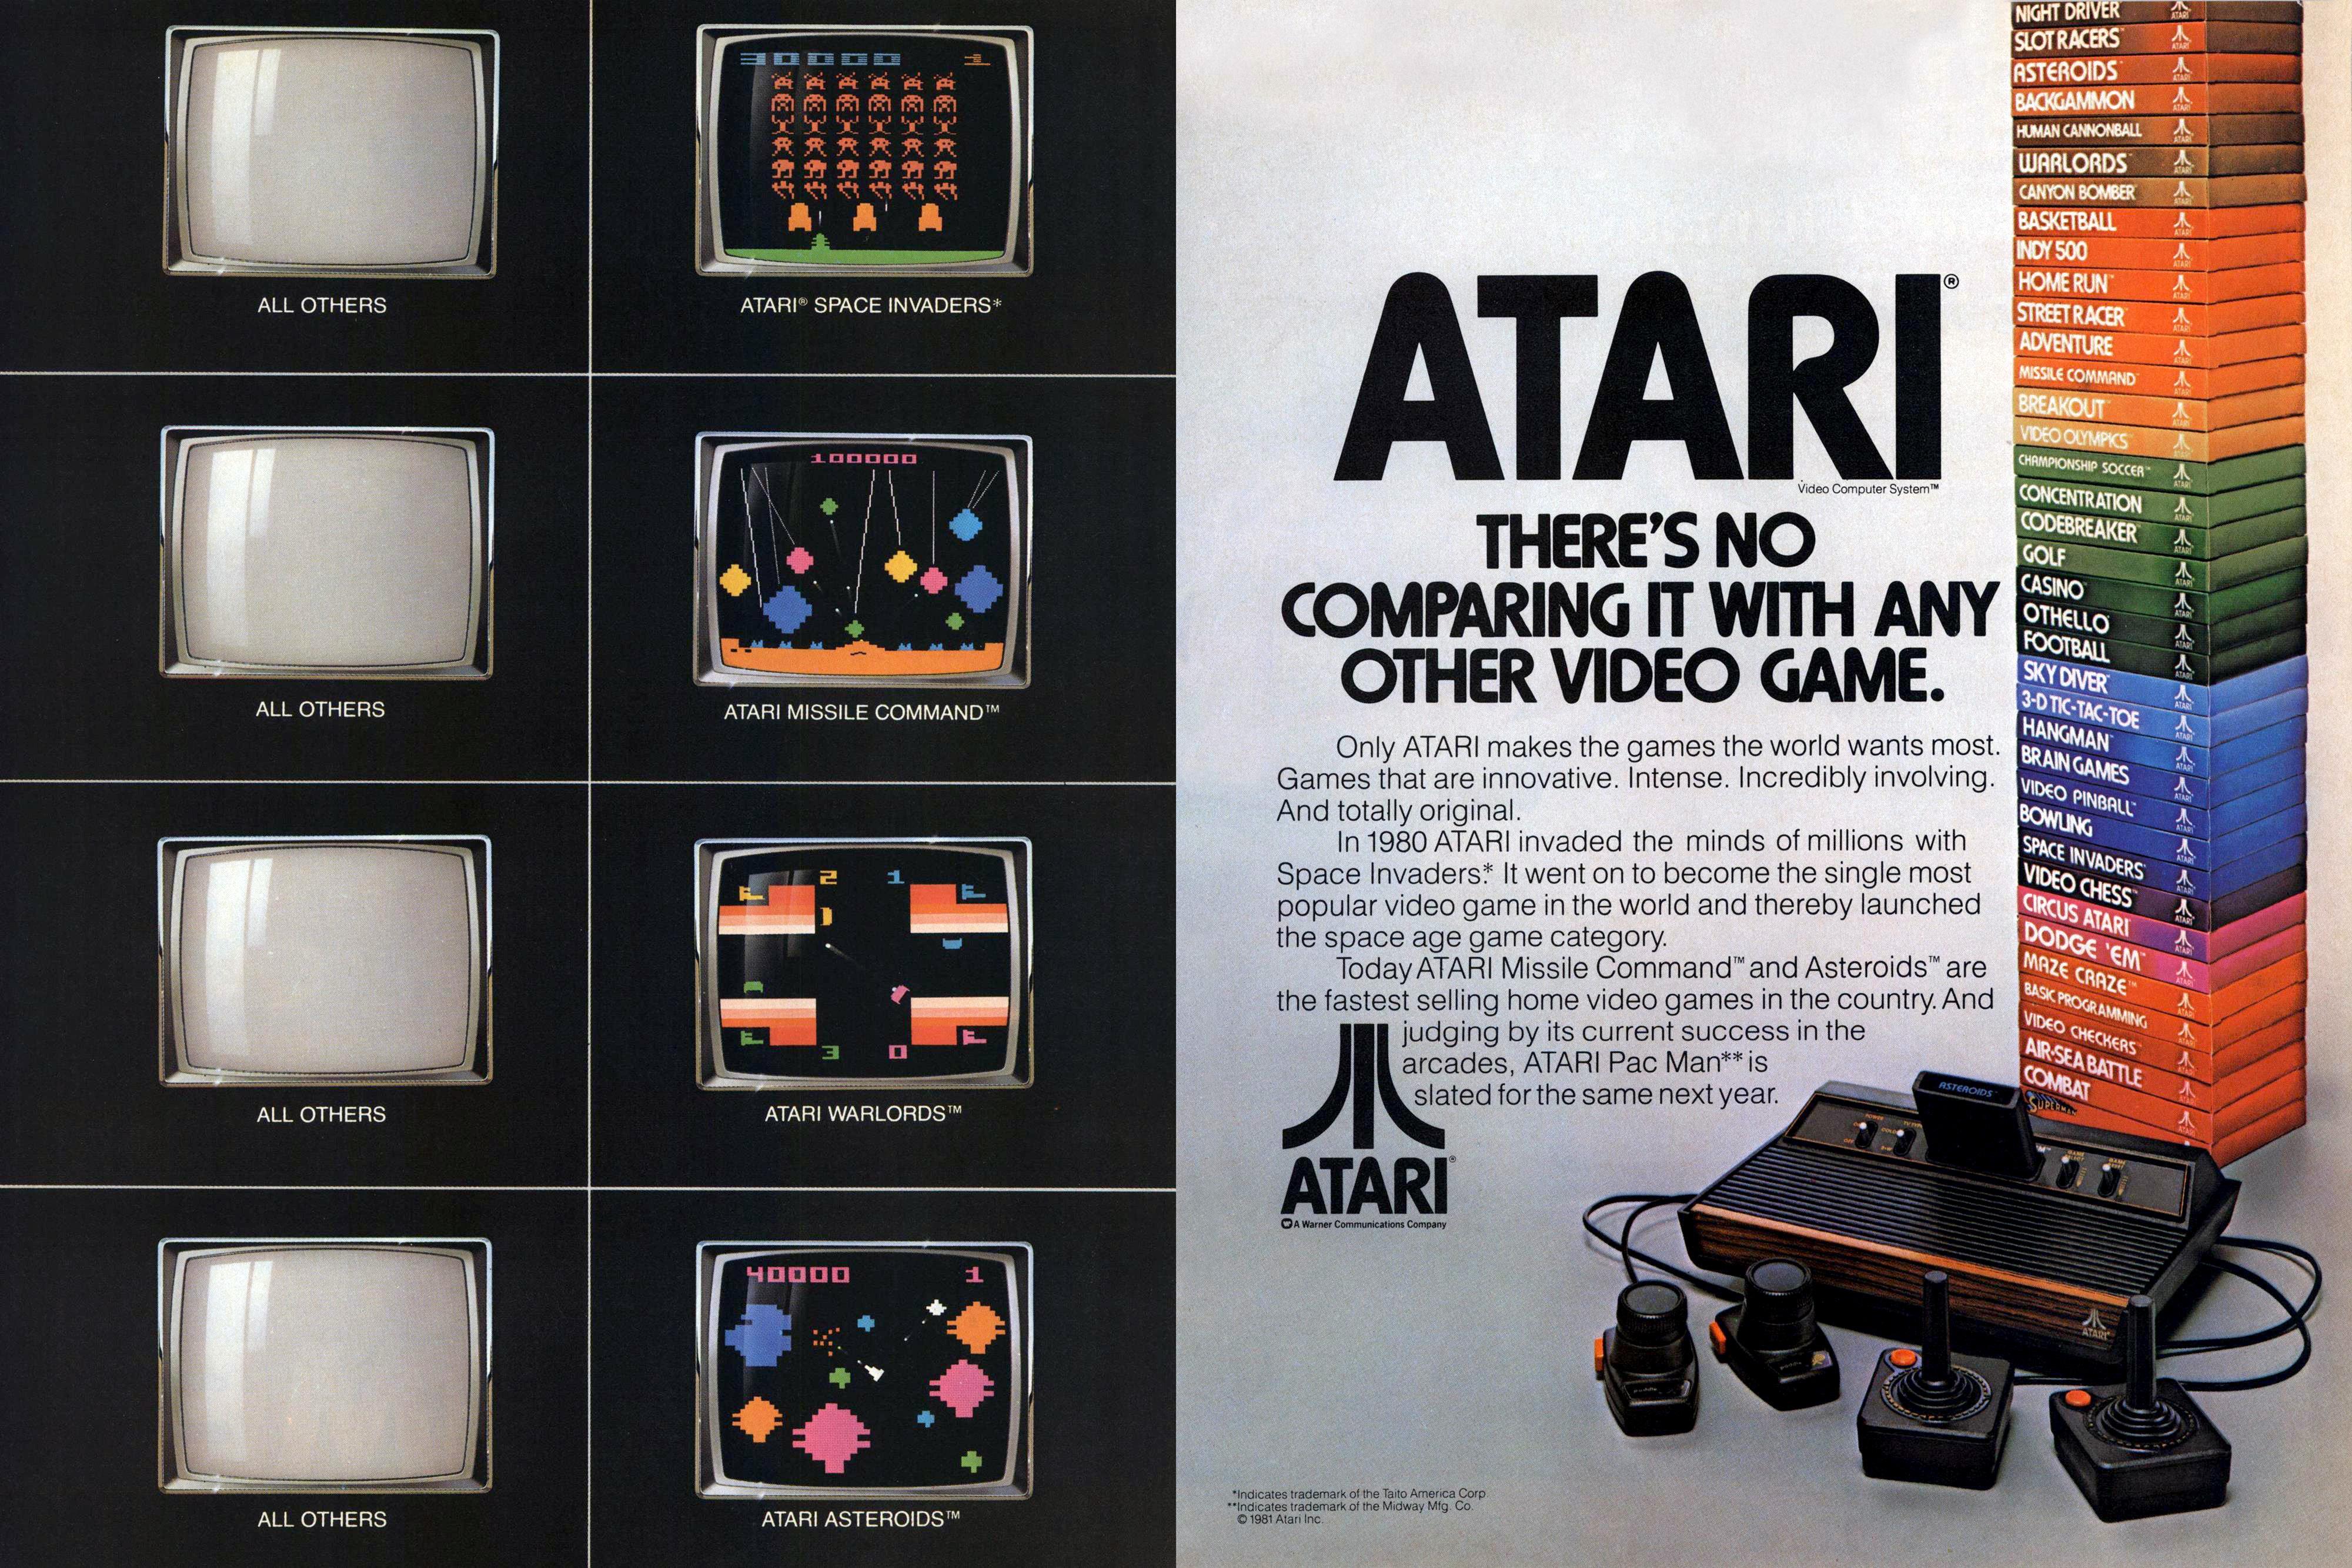 Slik så en reklame for Atari ut i 1981. Trykk for større bilde.